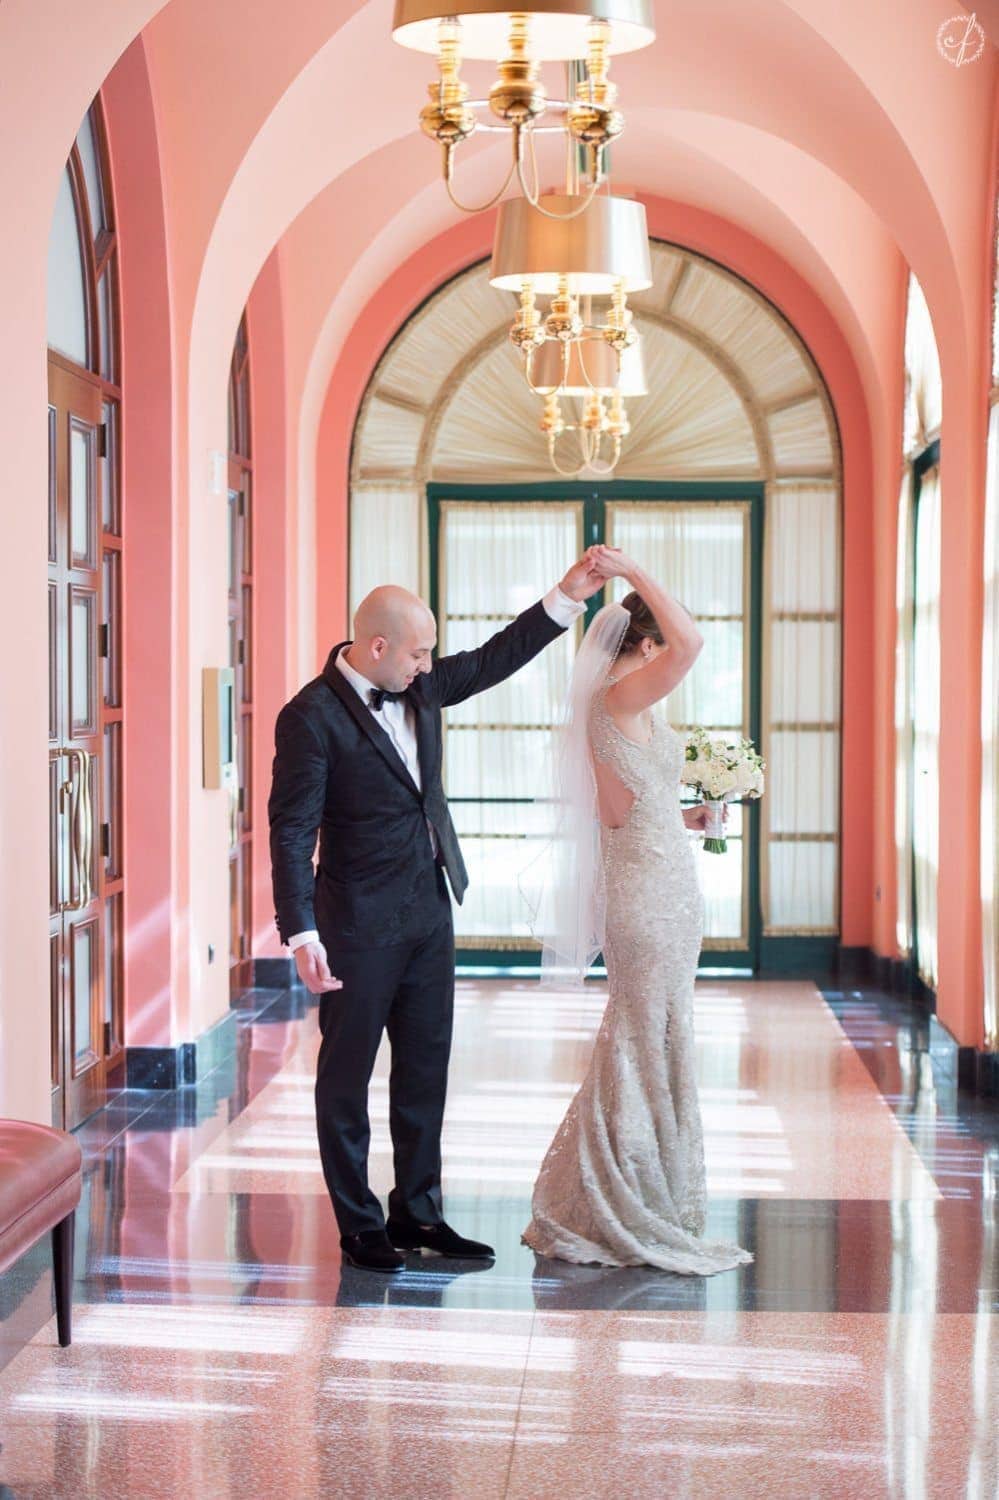 Luxury destination wedding photography in Condado Vanderbilt Hotel in San Juan Puerto Rico by Camille Fontanez